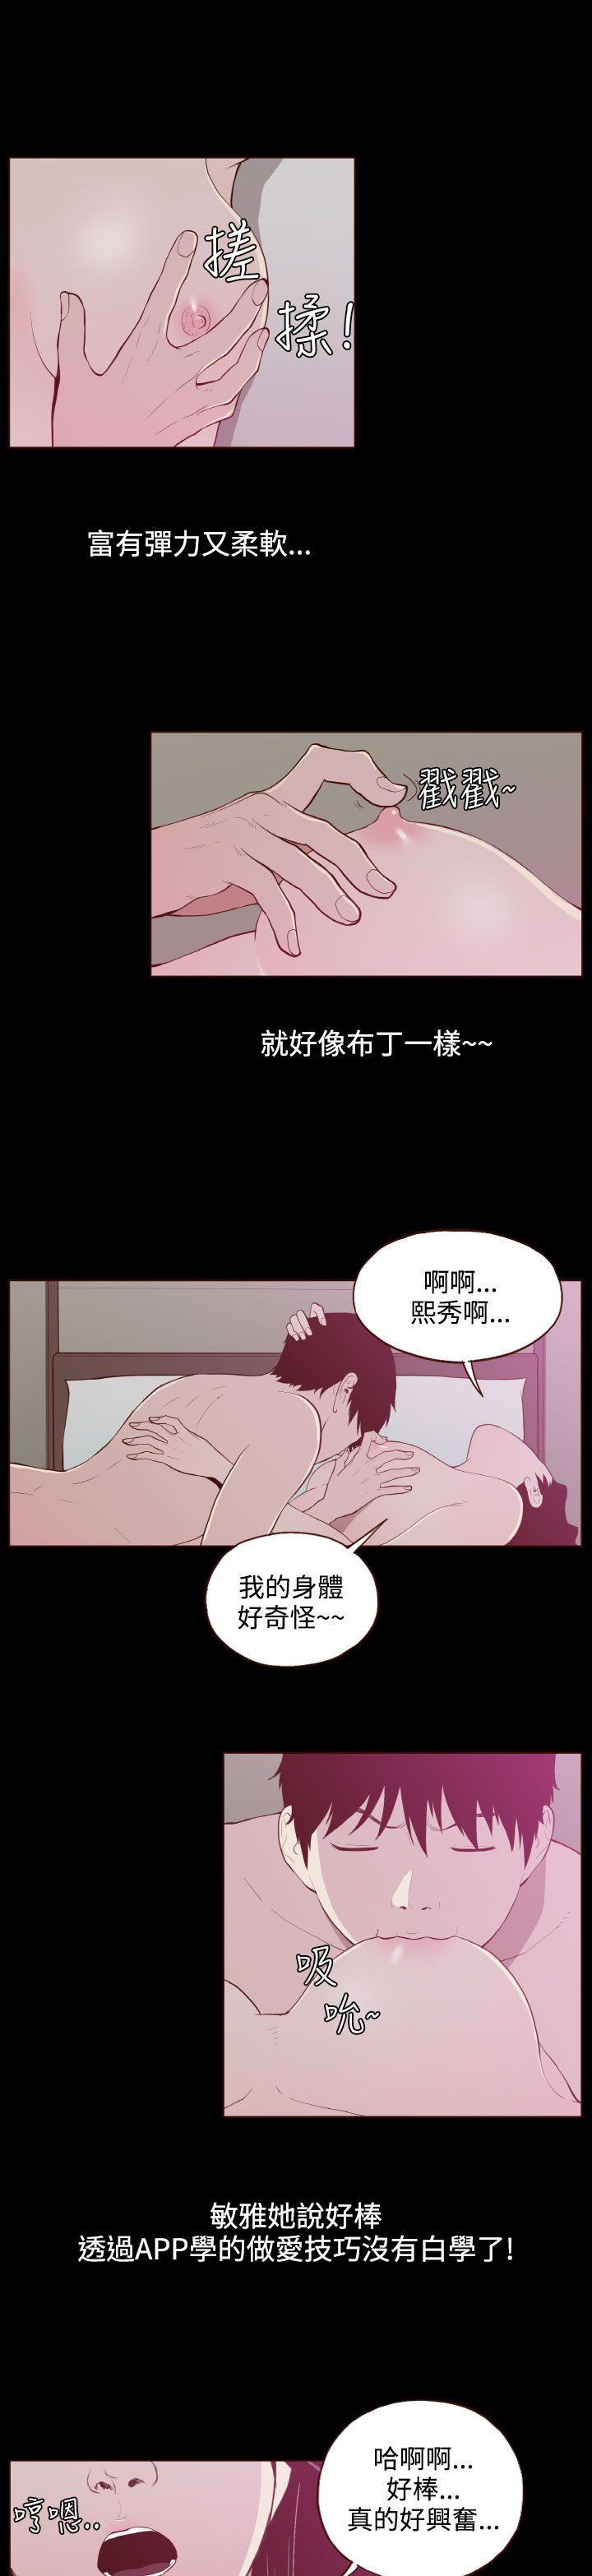 韩国污漫画 無法隱藏 第24话 15